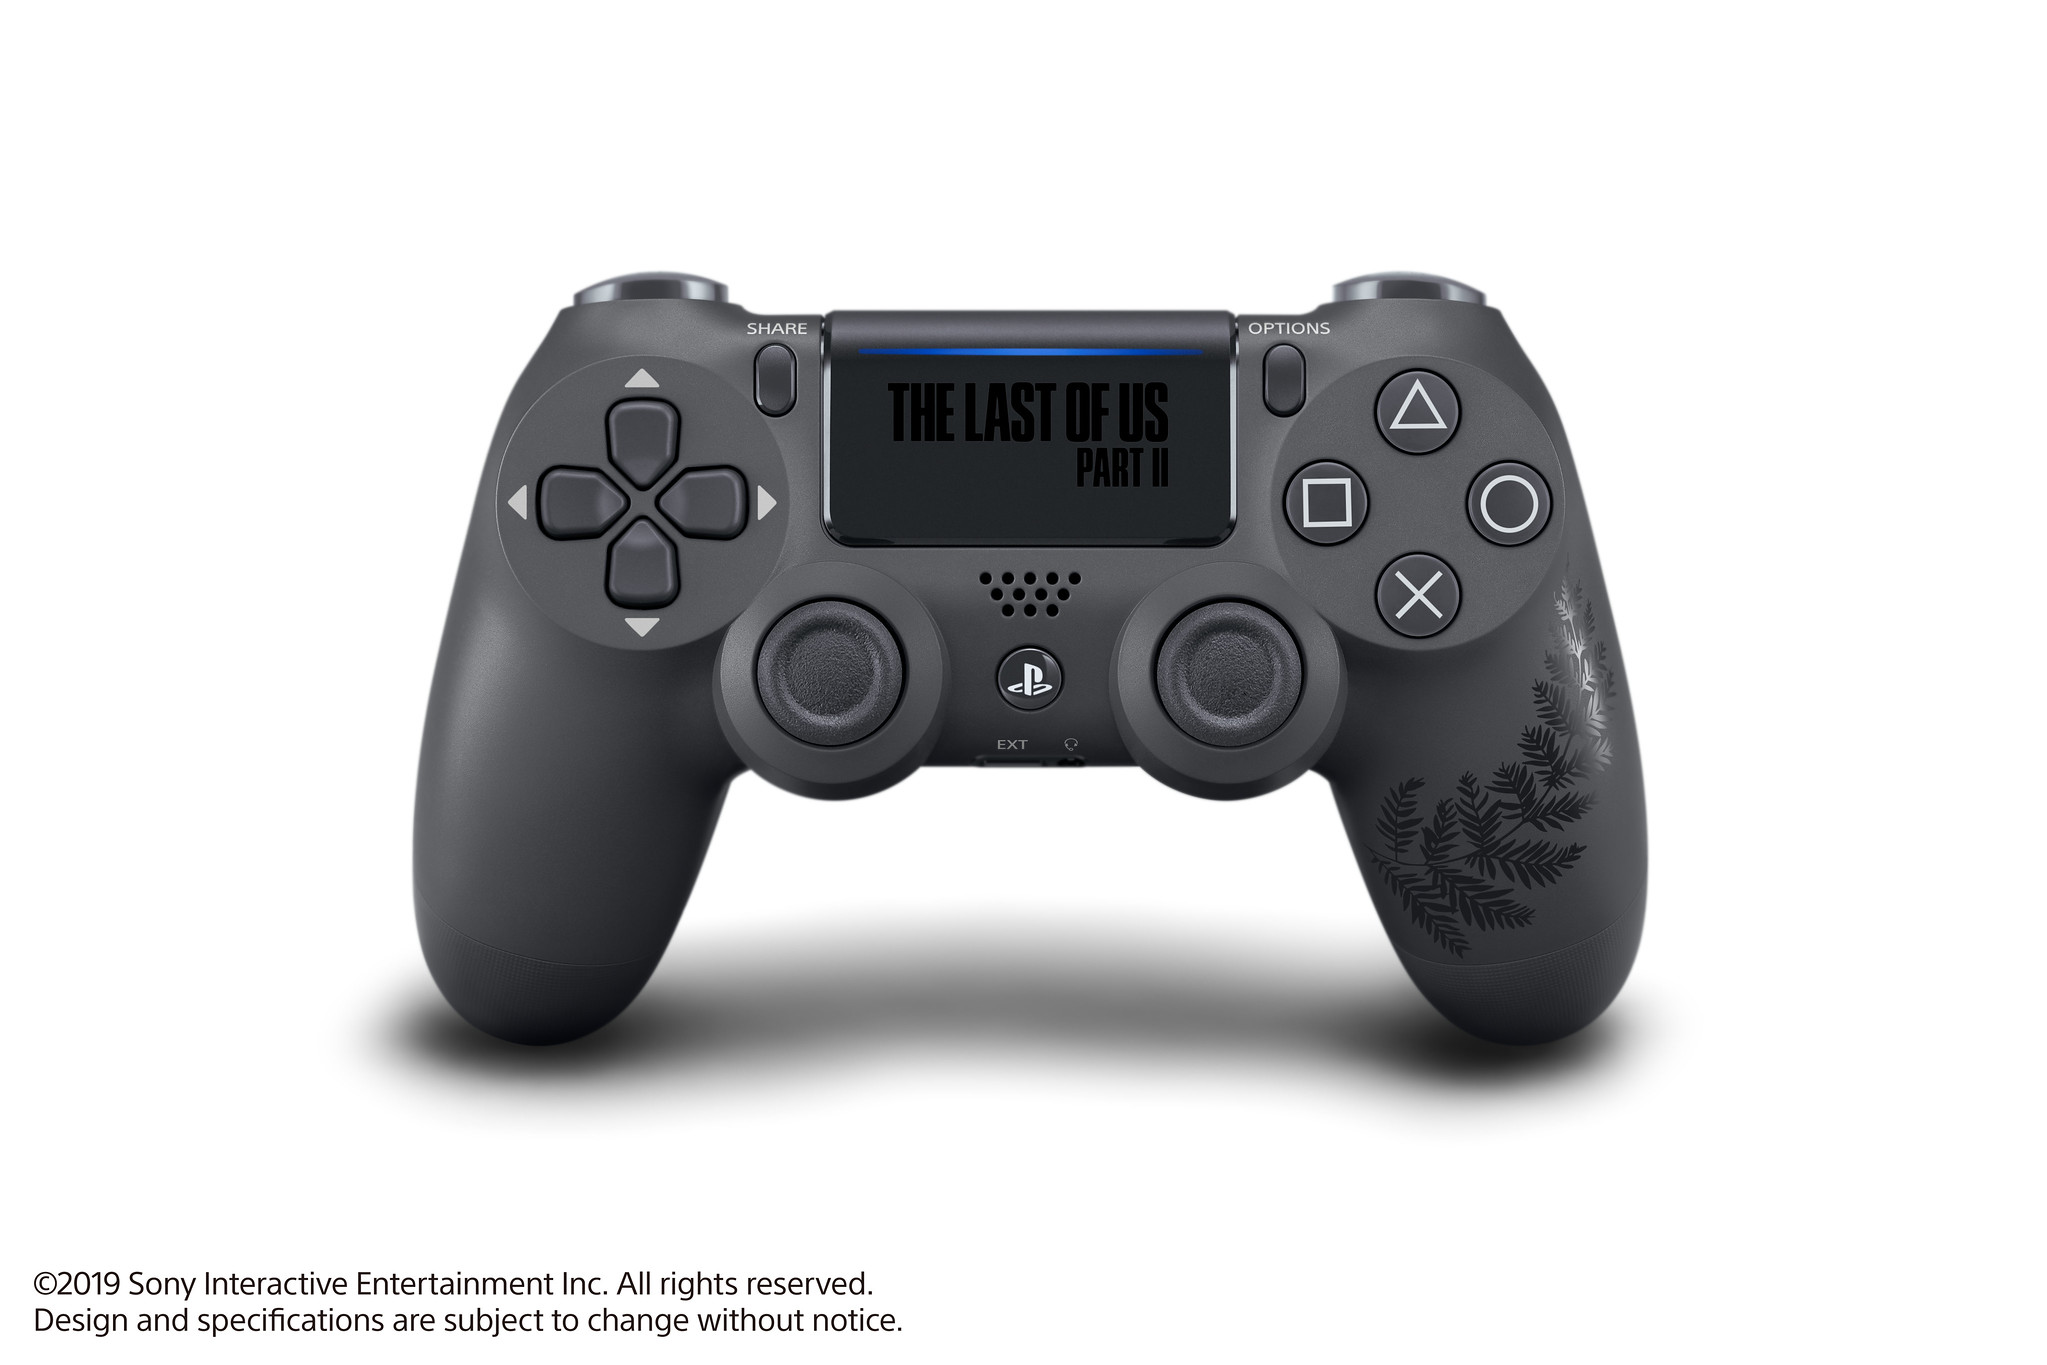 Tay cầm PS4 Pro The Last Of Us Limited - Hàng chính hãng Sony